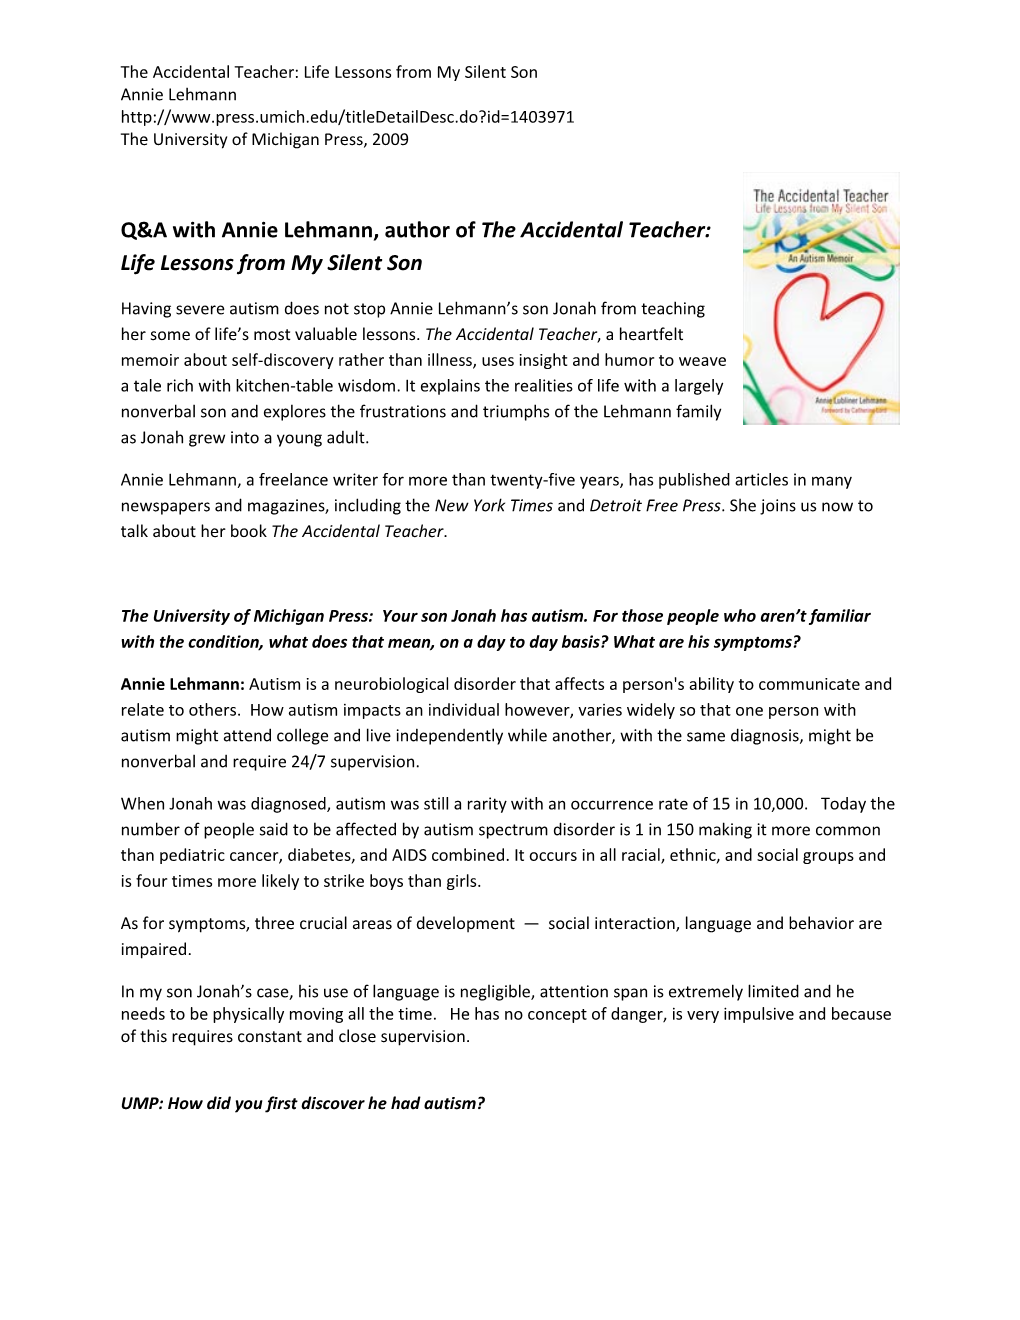 Q&A with Annie Lehmann, Author of the Accidental Teacher: Life